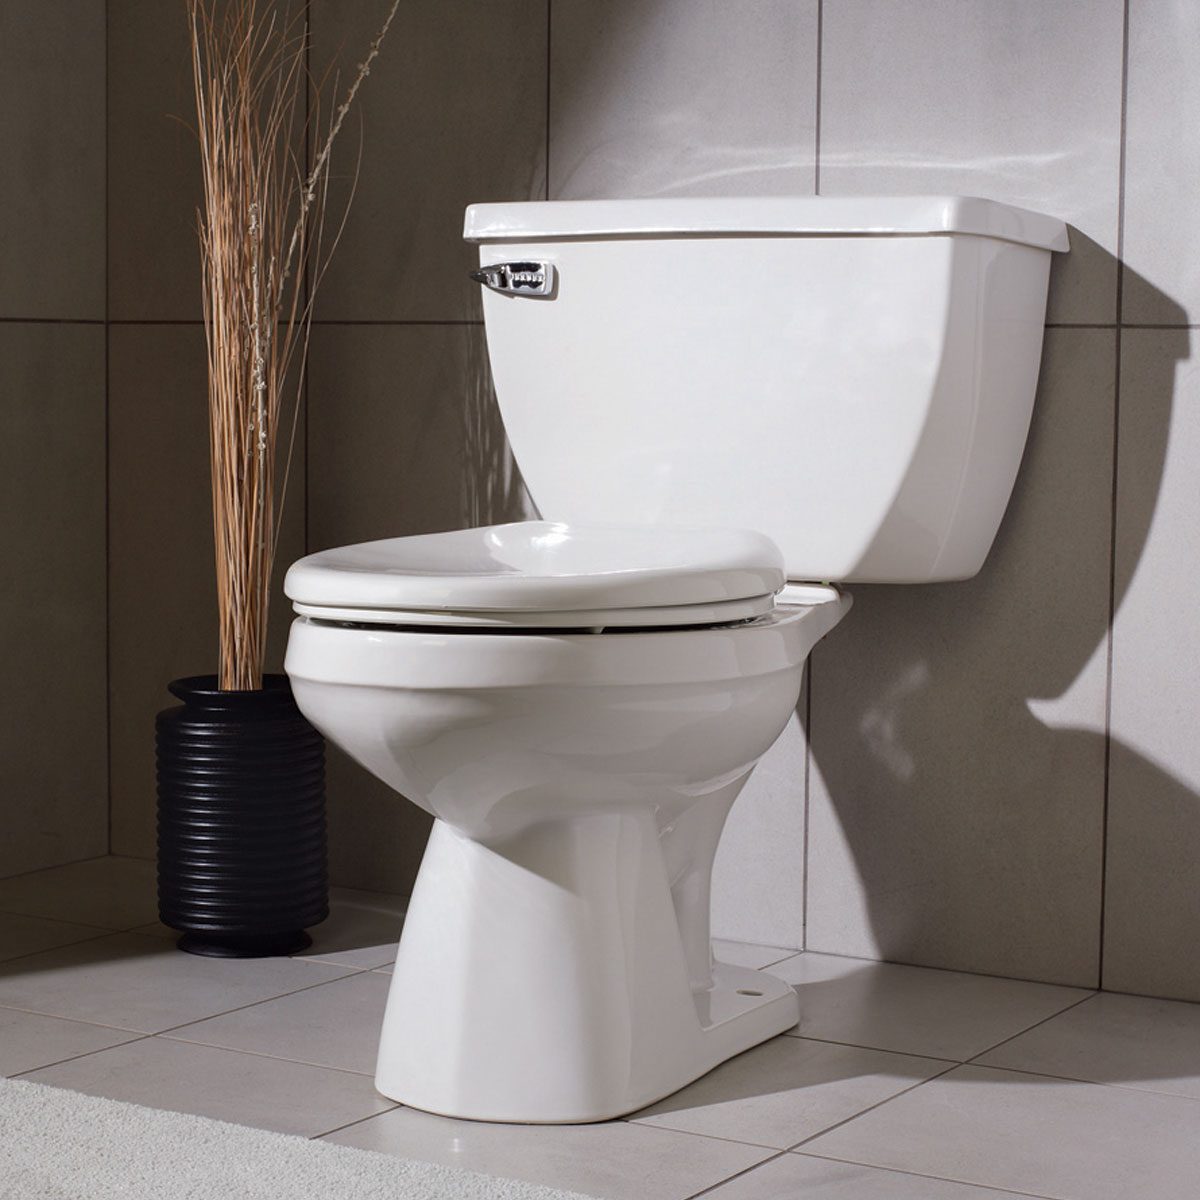 https://www.familyhandyman.com/wp-content/uploads/2019/08/FH11DJA_514_52_002-Gerber-Ultra-Flush-Toilet.jpg